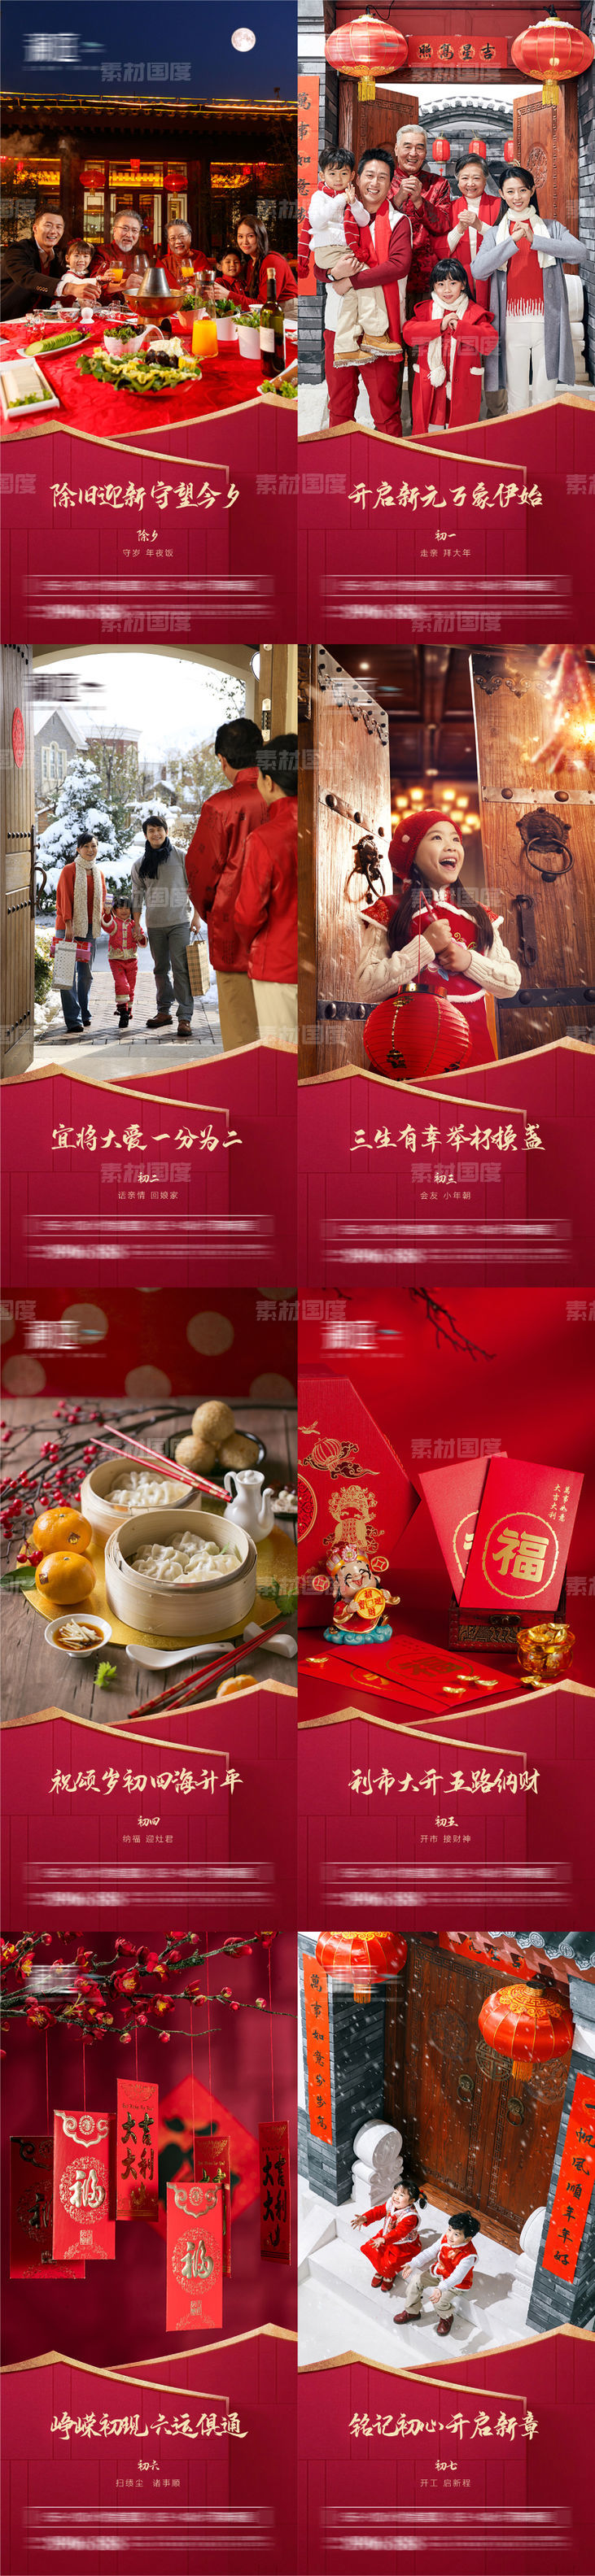 春节除夕及初一至初七宣传海报